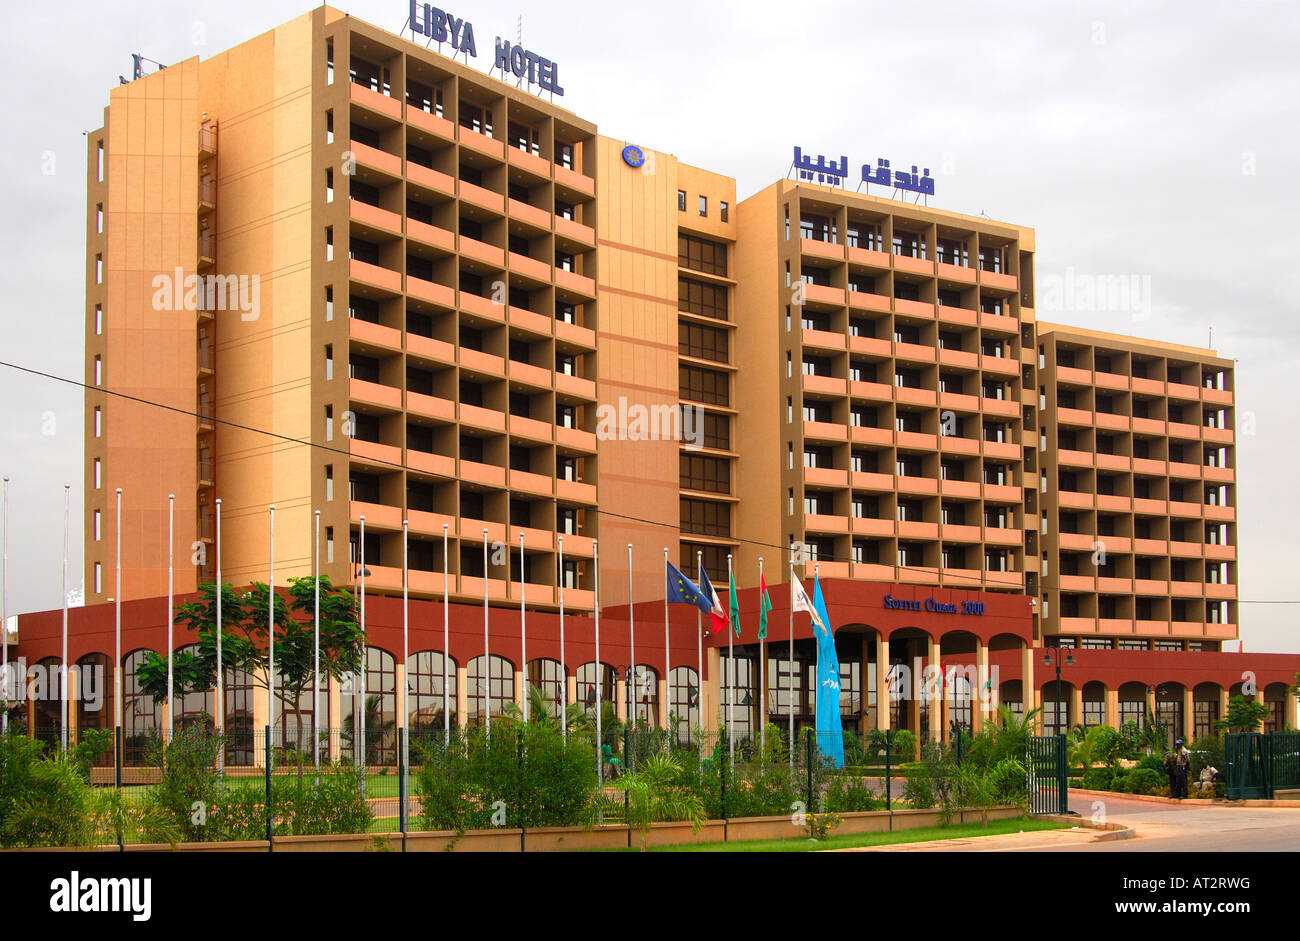 Libyen Hotel Sofitel Ouaga 2000 Ouagadougou Burkina Faso Stockfoto